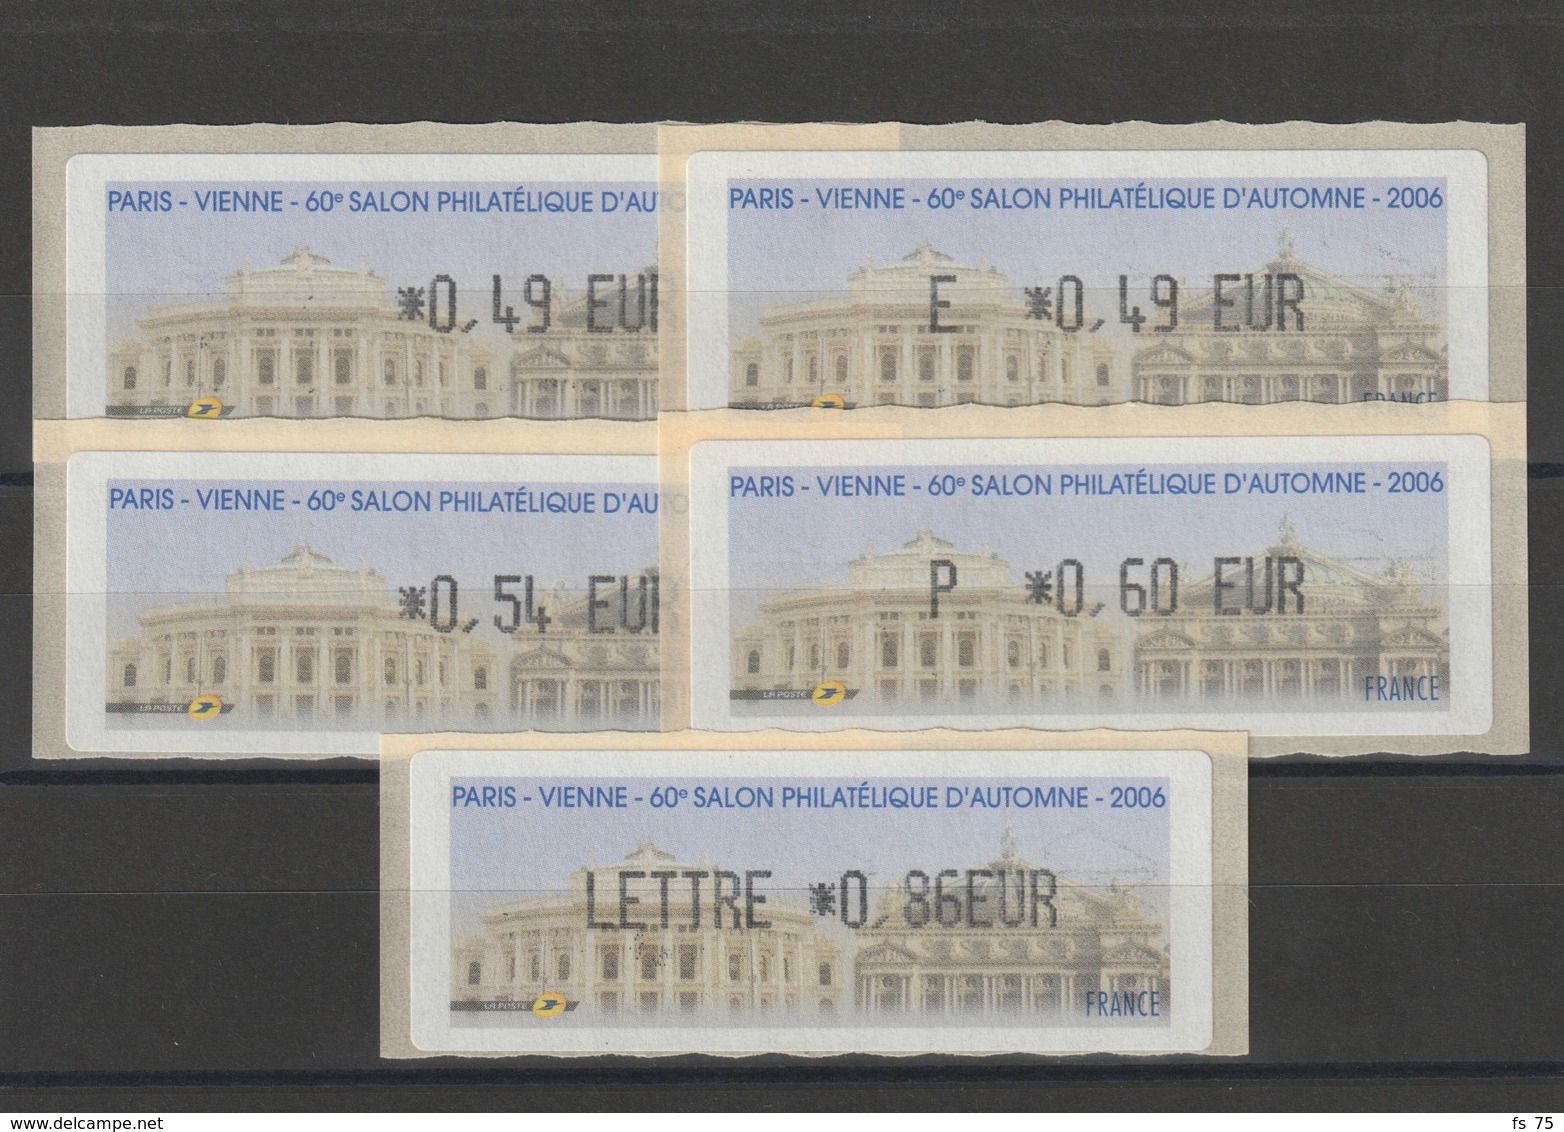 FRANCE - 5 VIGNETTES 0,49€, E. 0,49€, 0,54€, 0,60€ ET 0,86€ - PARIS - VIENNE - 60EME SALON PHILATELIQUE D'AUTOMNE 2006 - 1999-2009 Abgebildete Automatenmarke